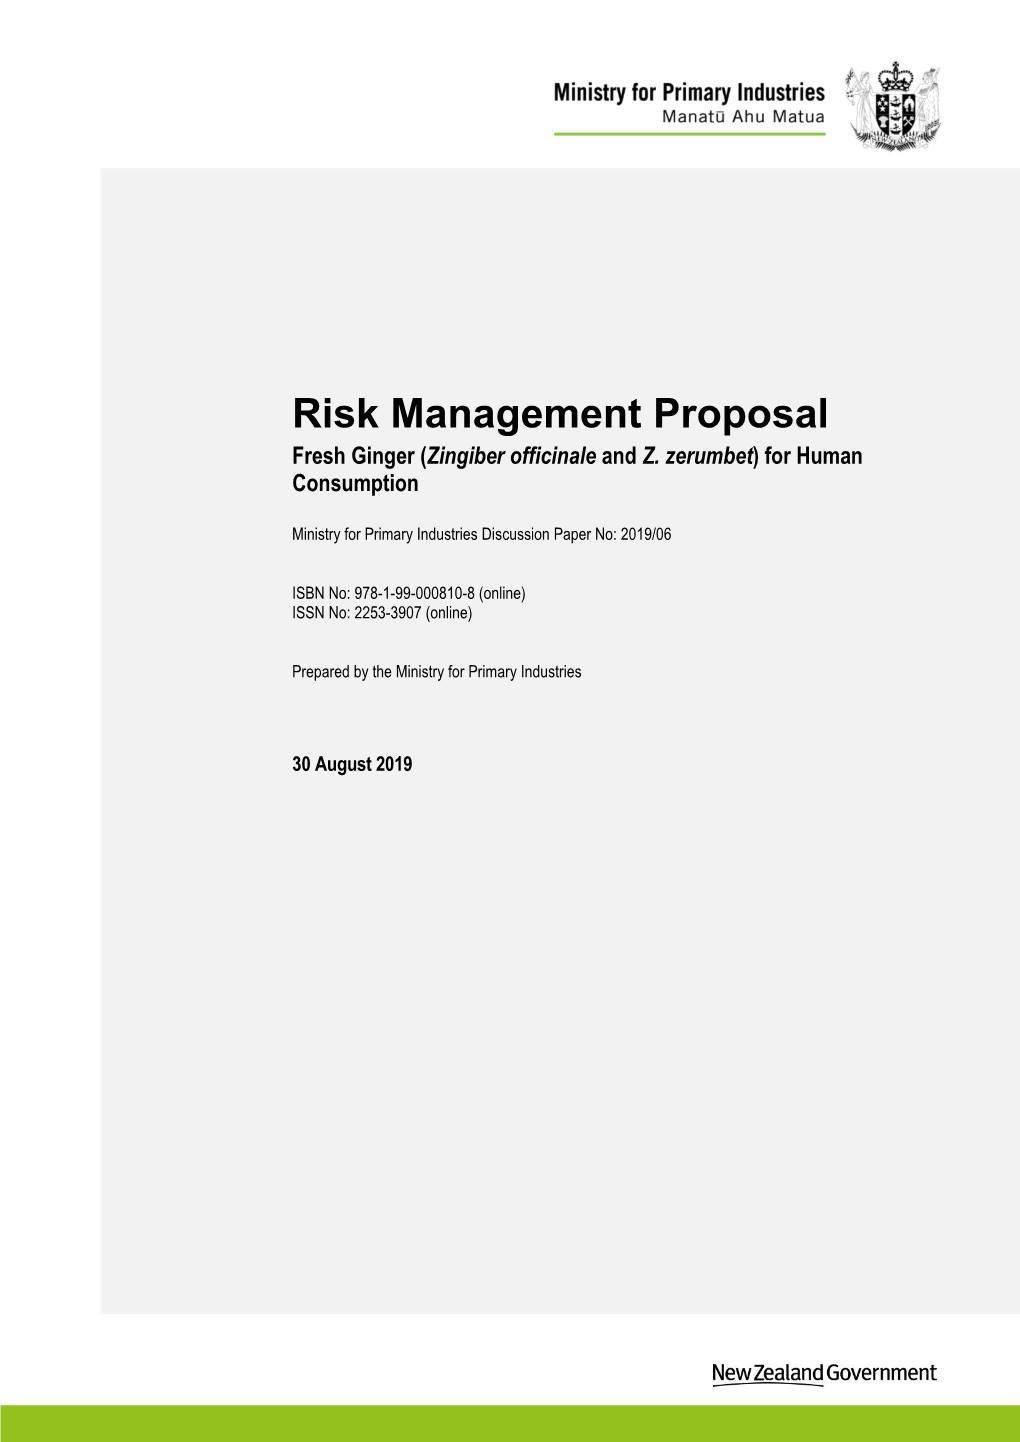 20190611 Ginger Risk Management Proposal RMP V2